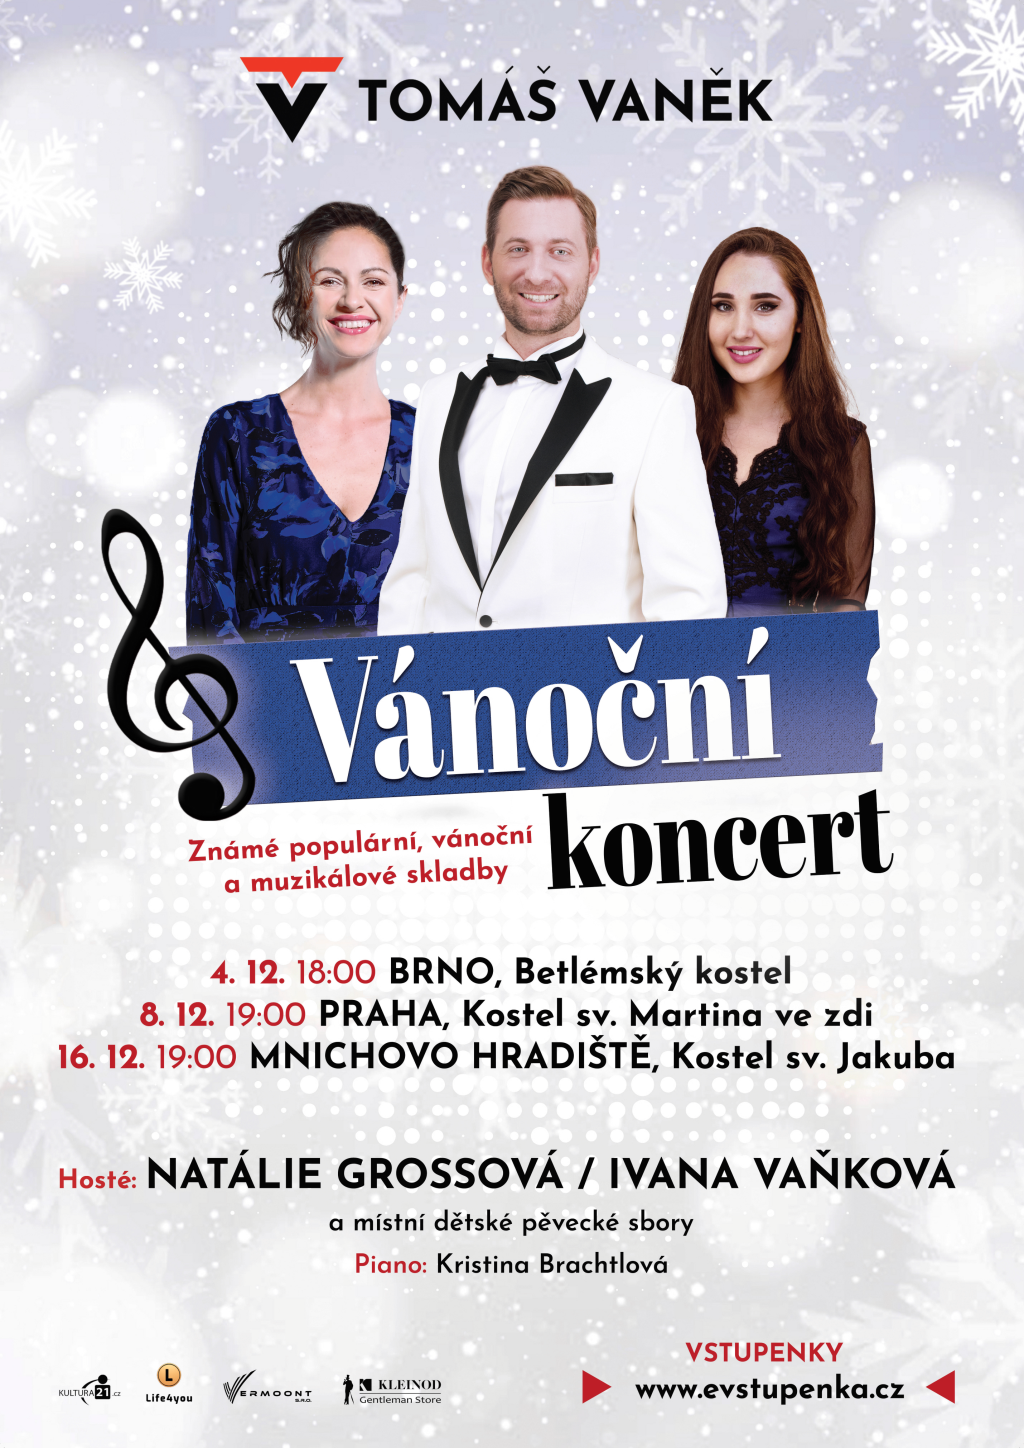 Zpěvák Tomáš Vaněk zavítá s vánočním koncertem do tří měst. Včetně svého „rodného“ Mnichova Hradiště